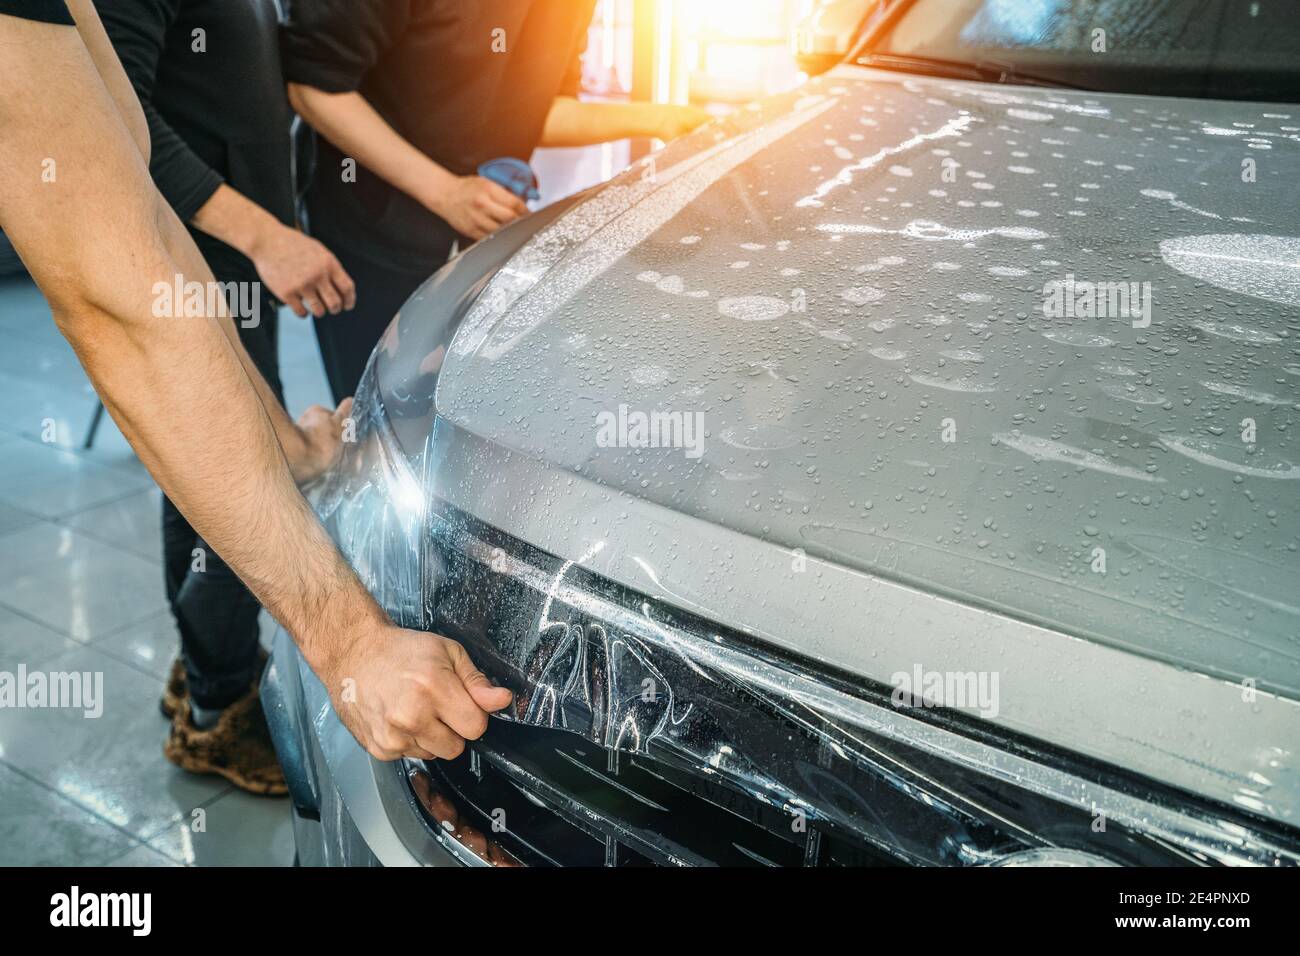 Installation PPF oder Lackschutzfolie auf dem Auto als schützende  Polymerhaut vor Kratzern und Steinschlag Stockfotografie - Alamy